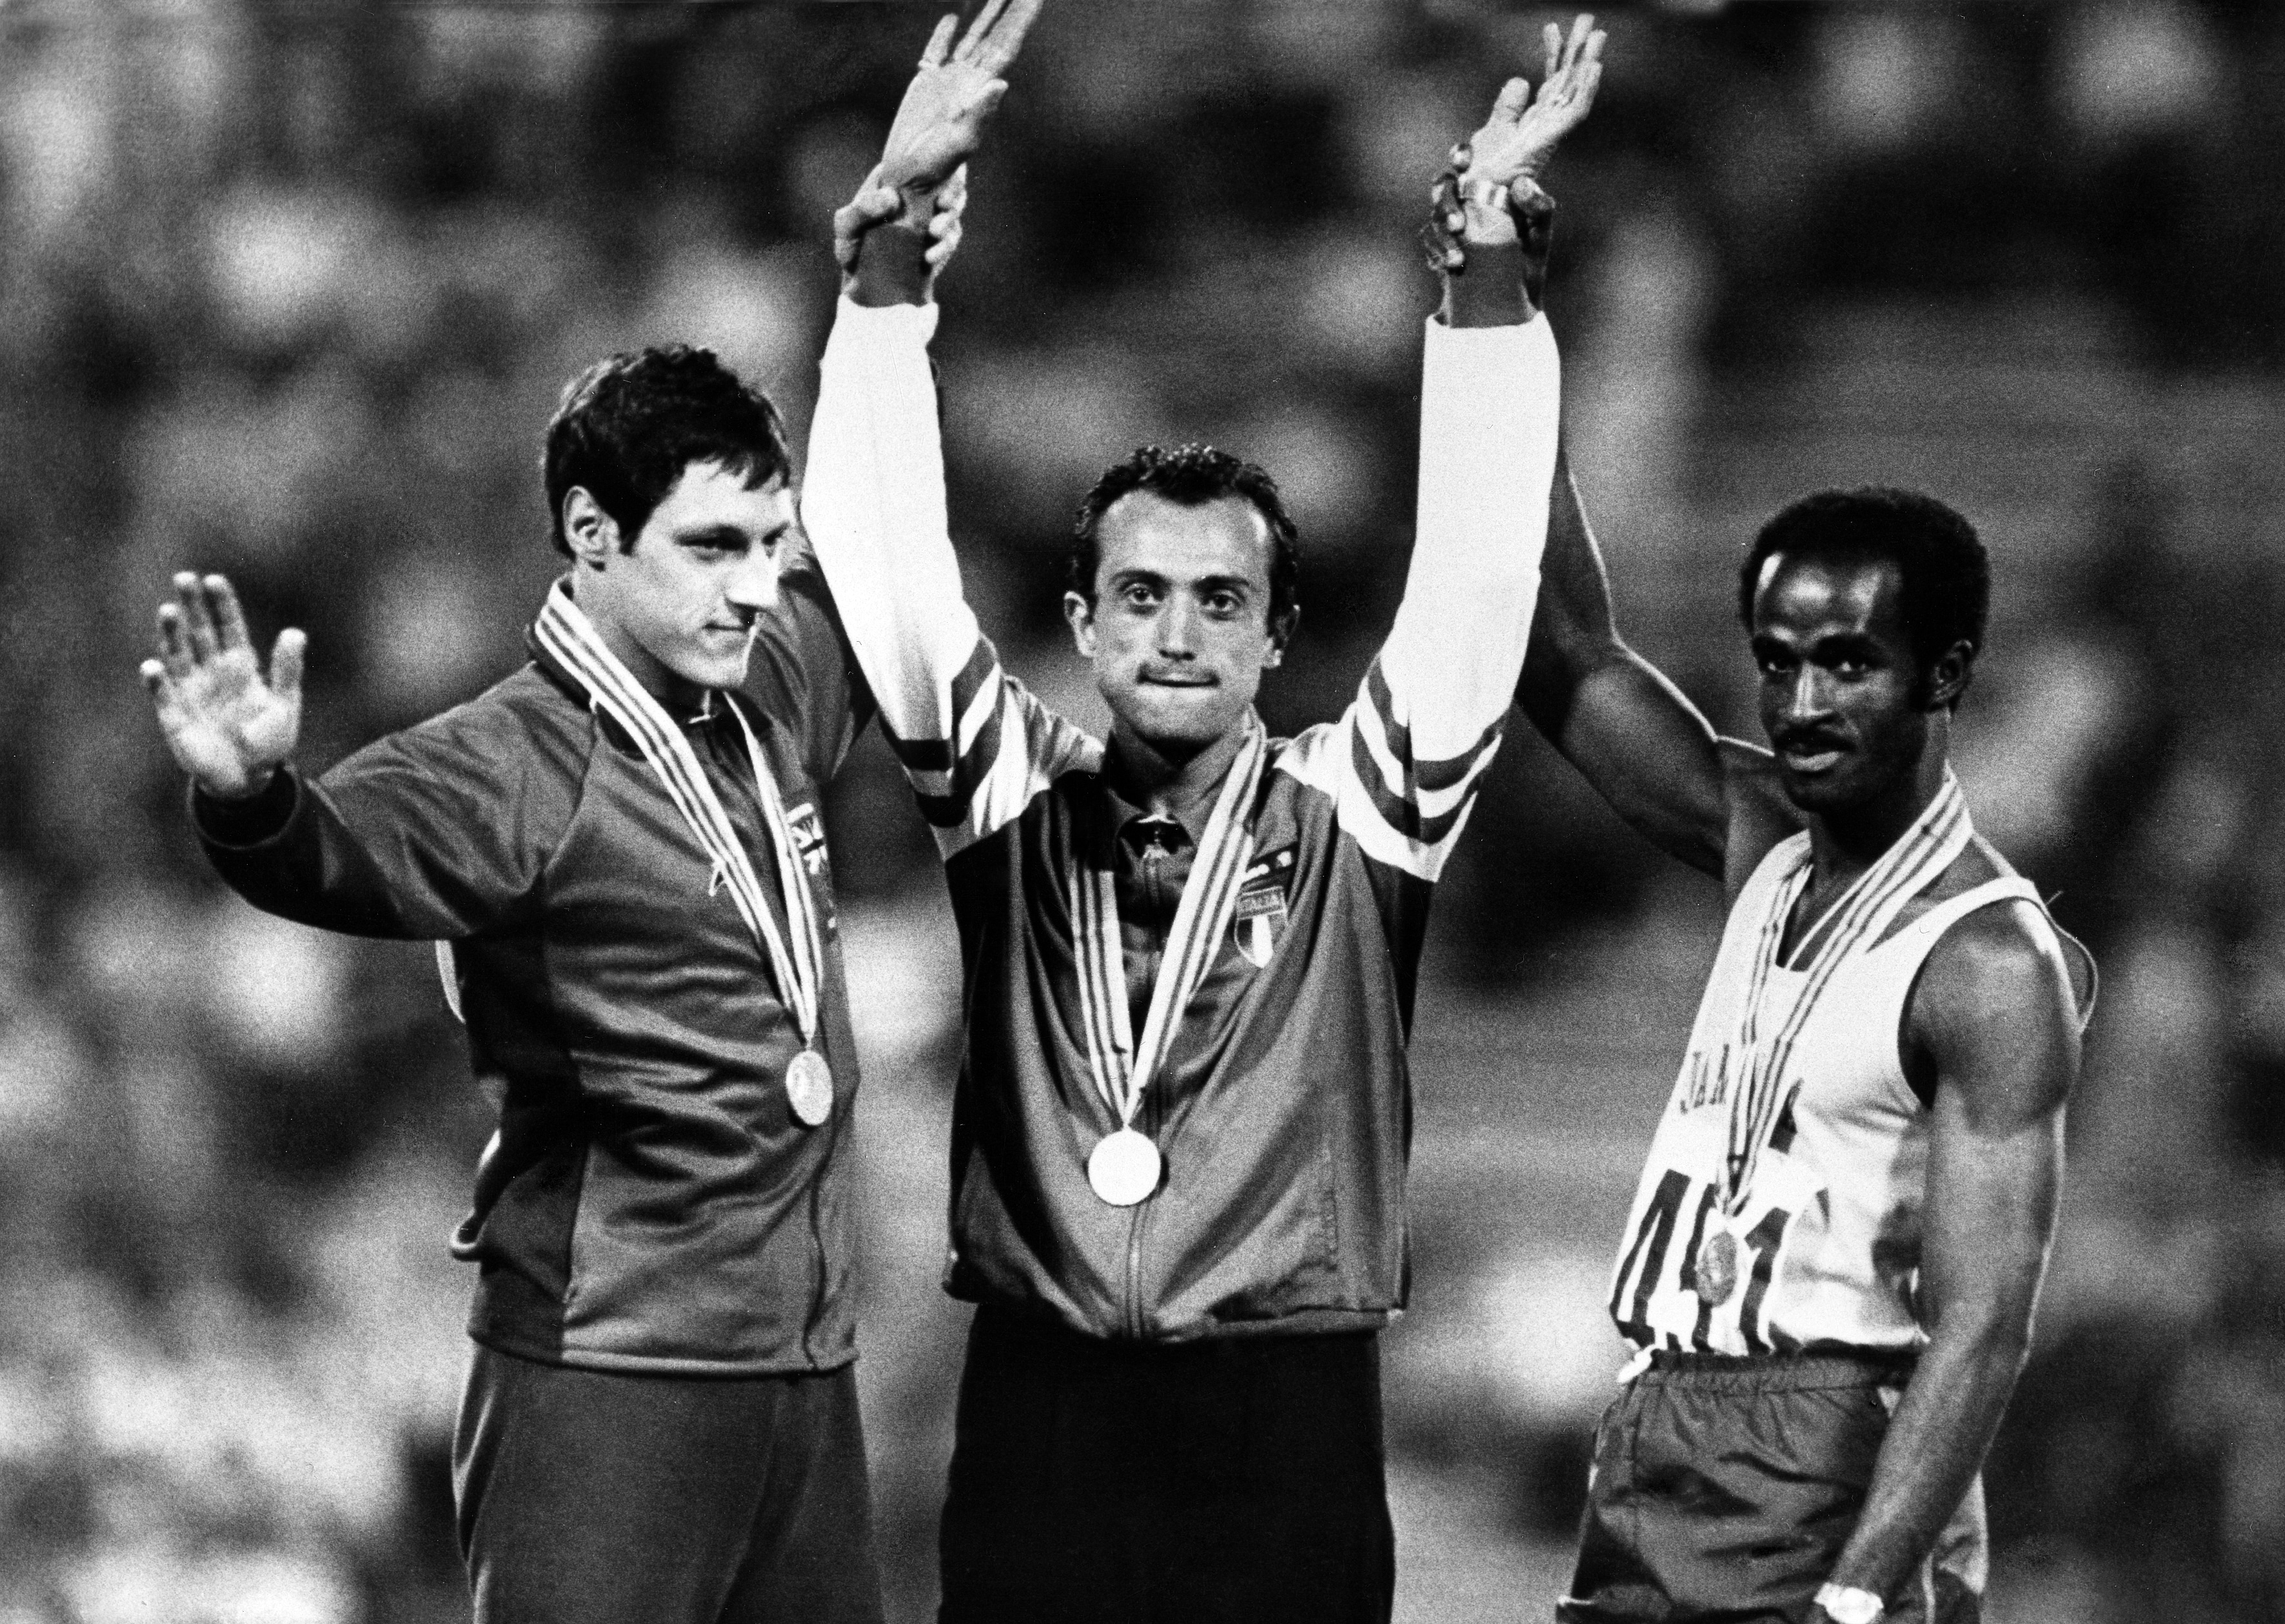 Pietro Mennea, medaglia d'oro nei 200 metri piani, dopo avere stabilito l'anno prima, nel 1979, il record mondiale ai Giochi mondiali universitari di Città del Messico